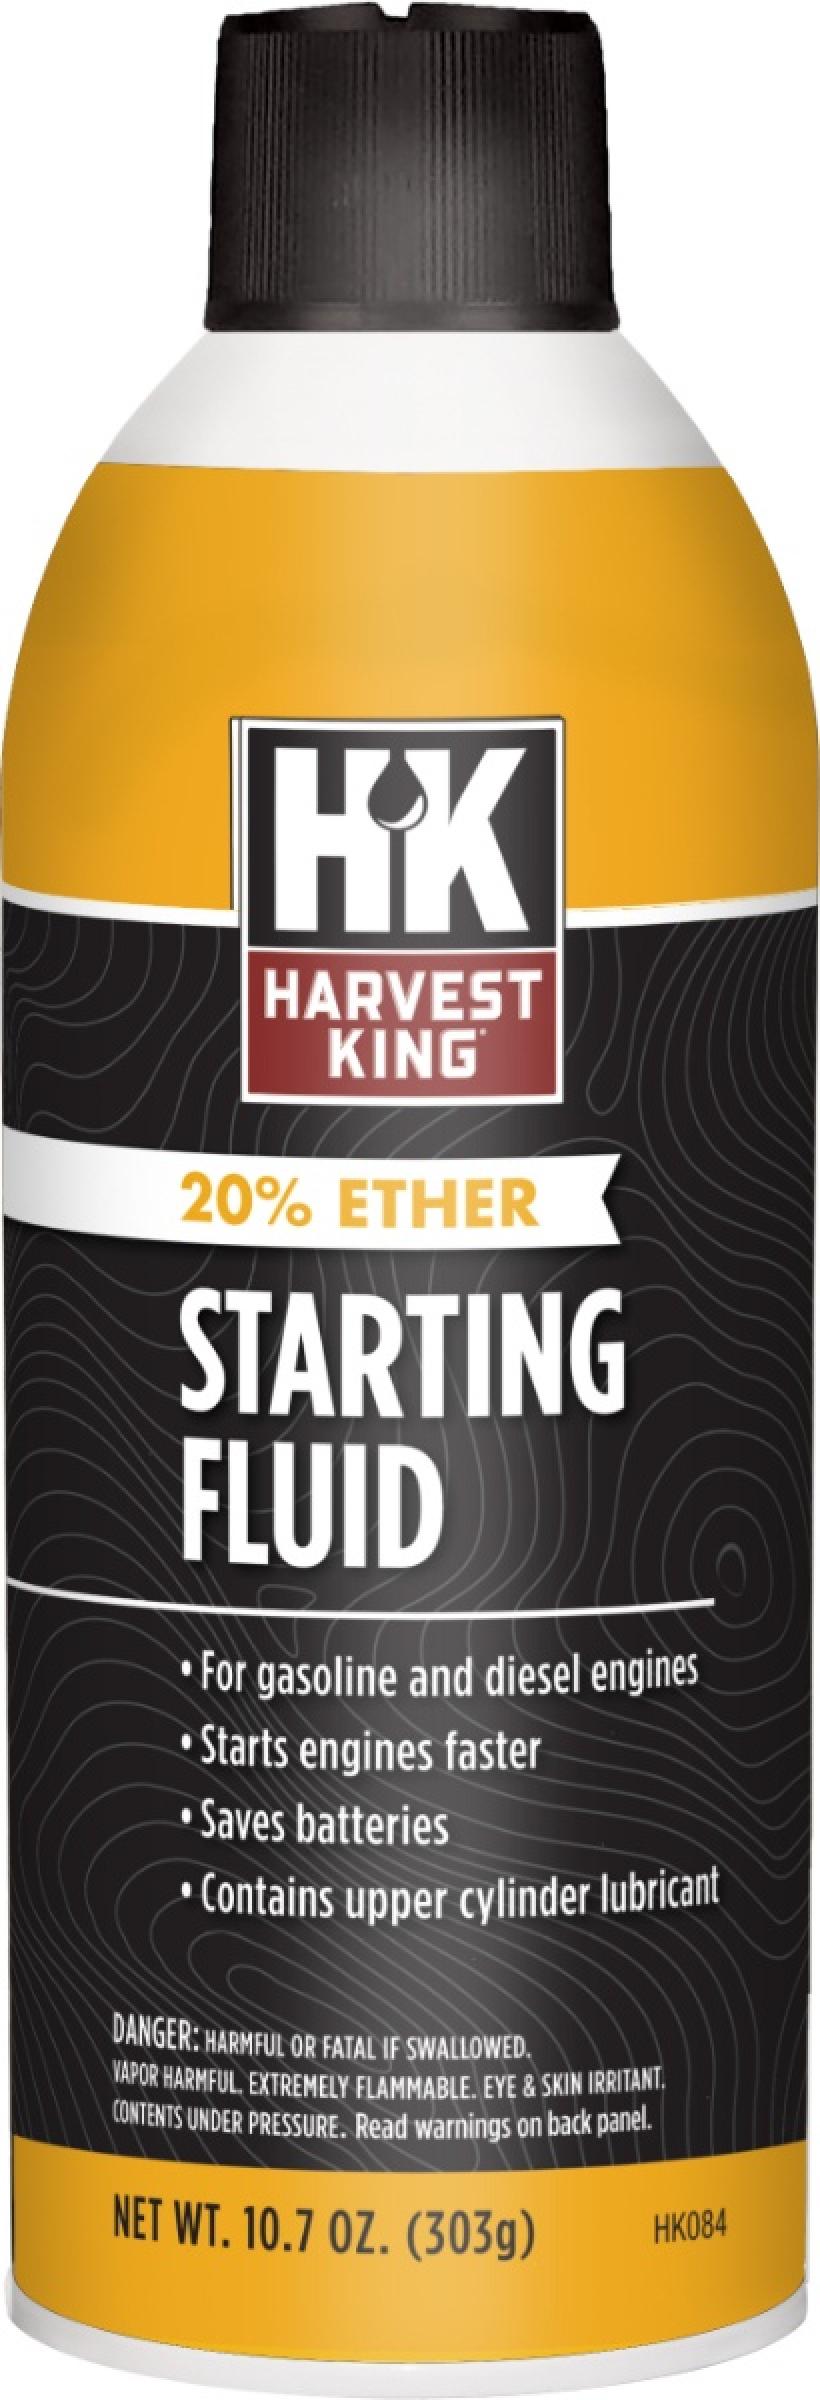 Harvest King Starting Fluid